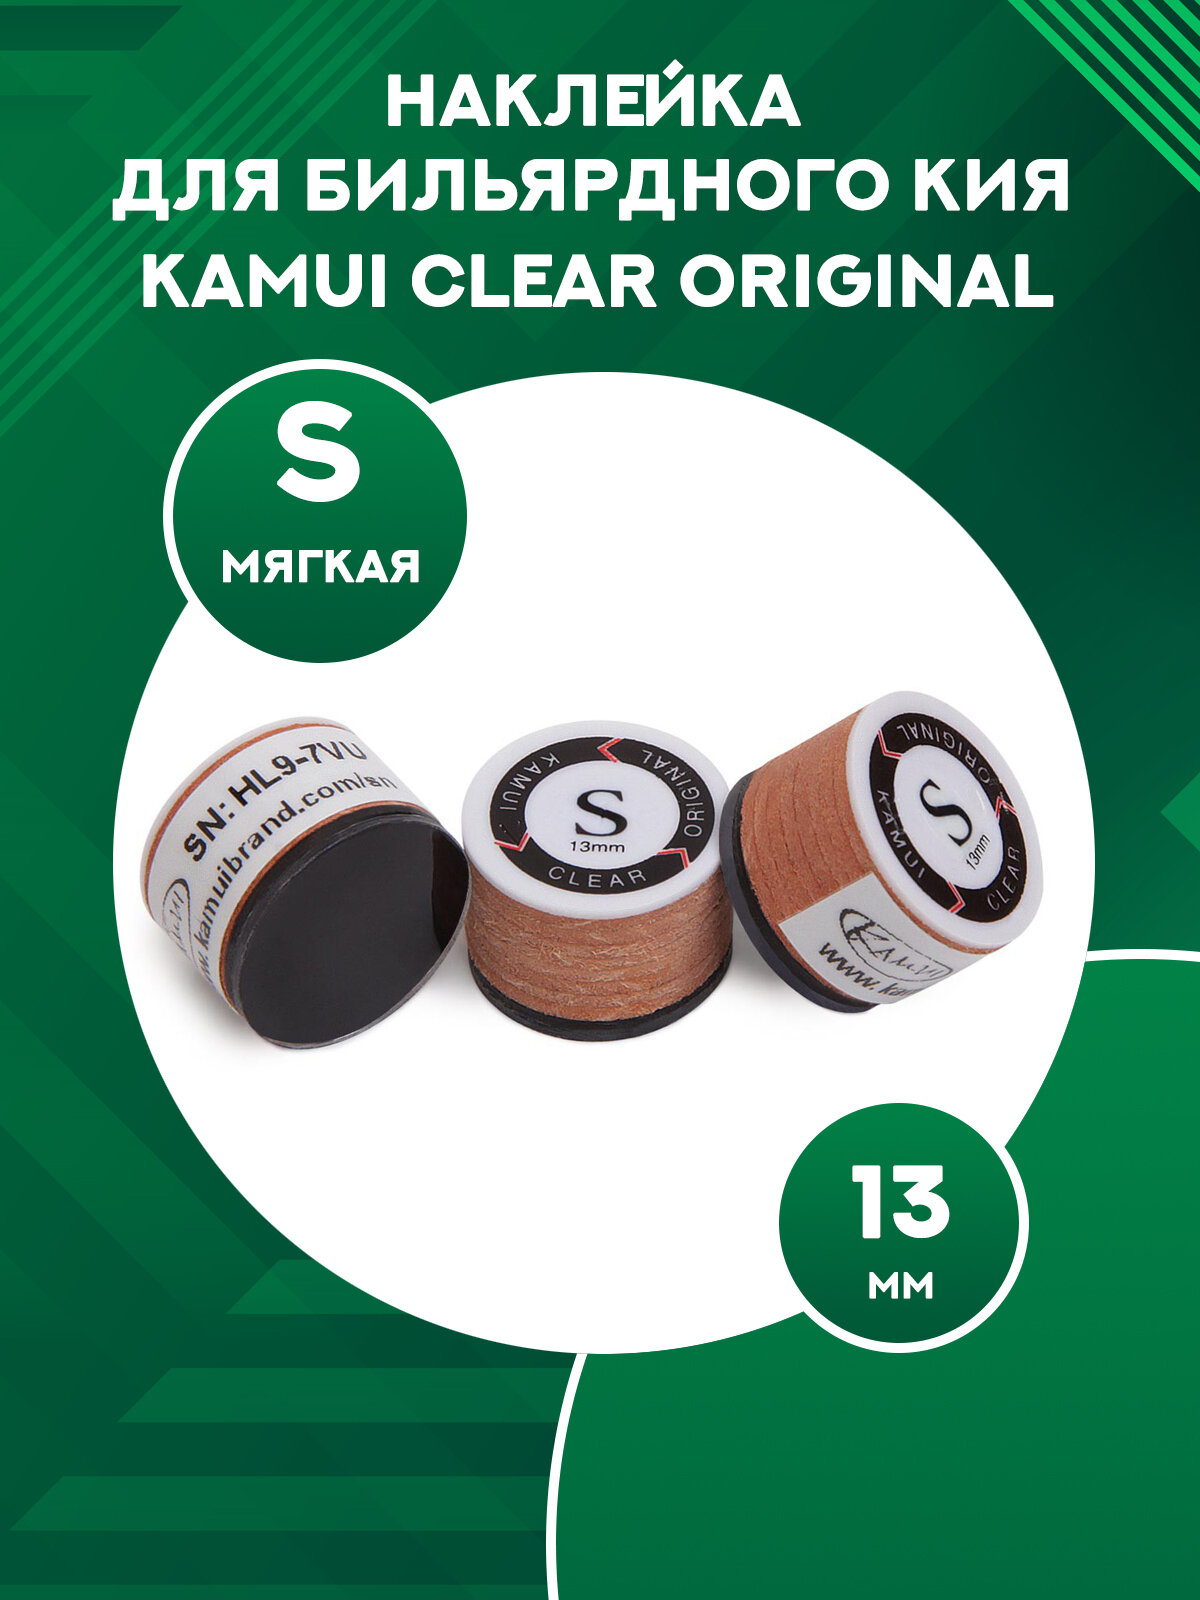 Наклейка для бильярдного кия Kamui Clear Original 13 мм, S